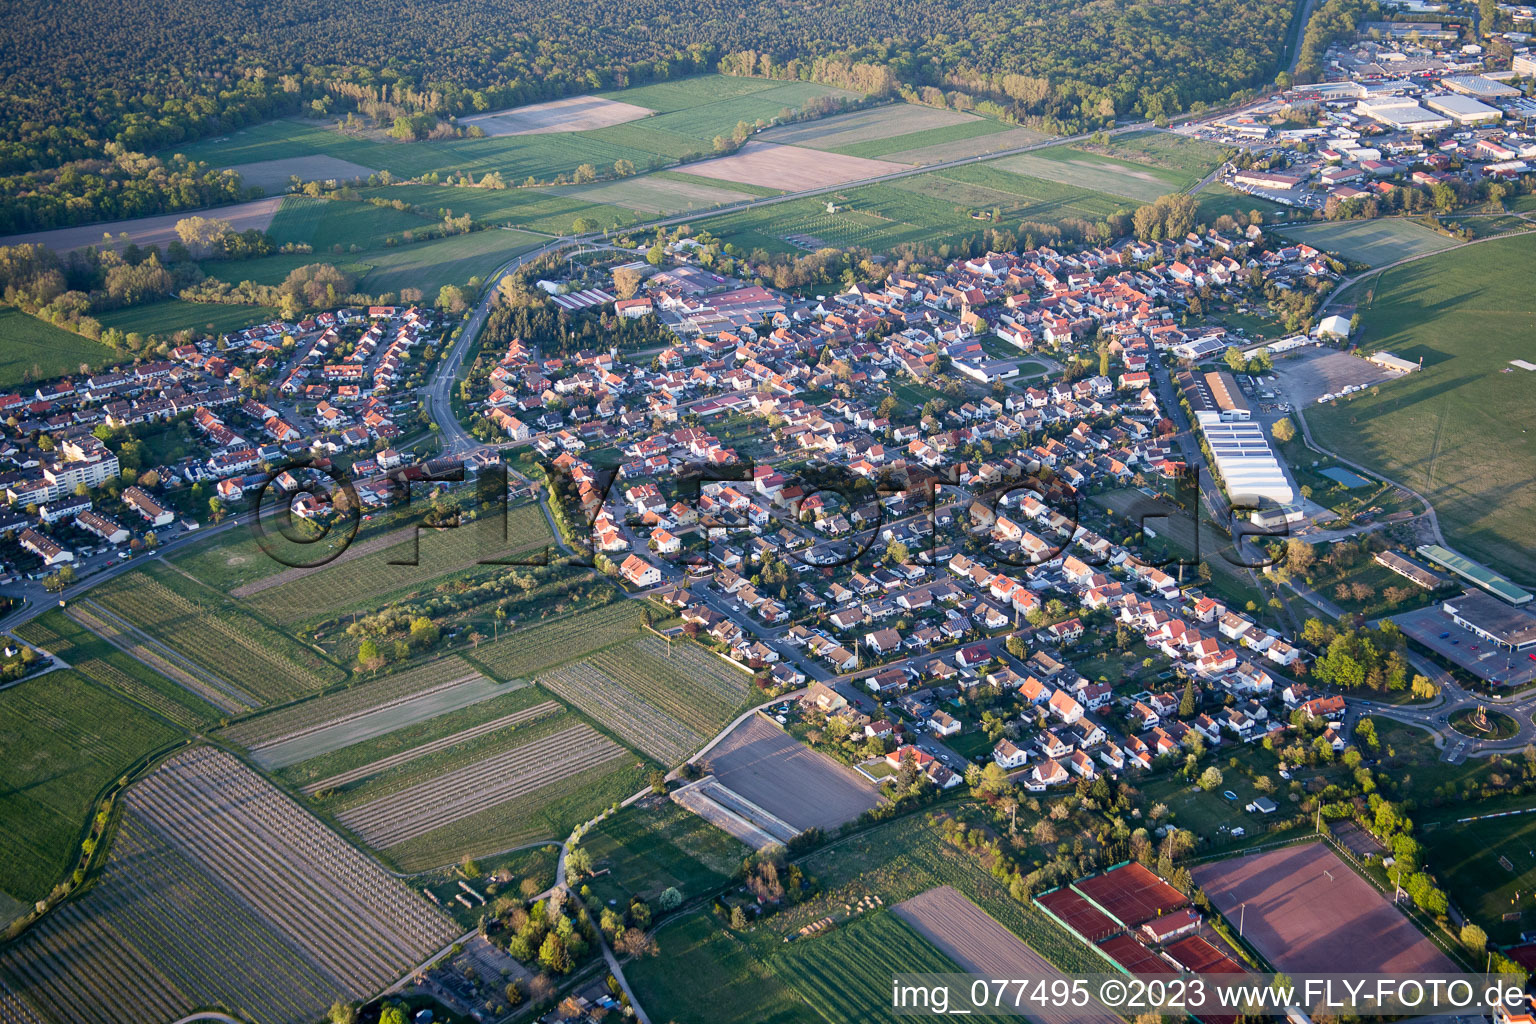 Vue aérienne de Quartier Speyerdorf in Neustadt an der Weinstraße dans le département Rhénanie-Palatinat, Allemagne